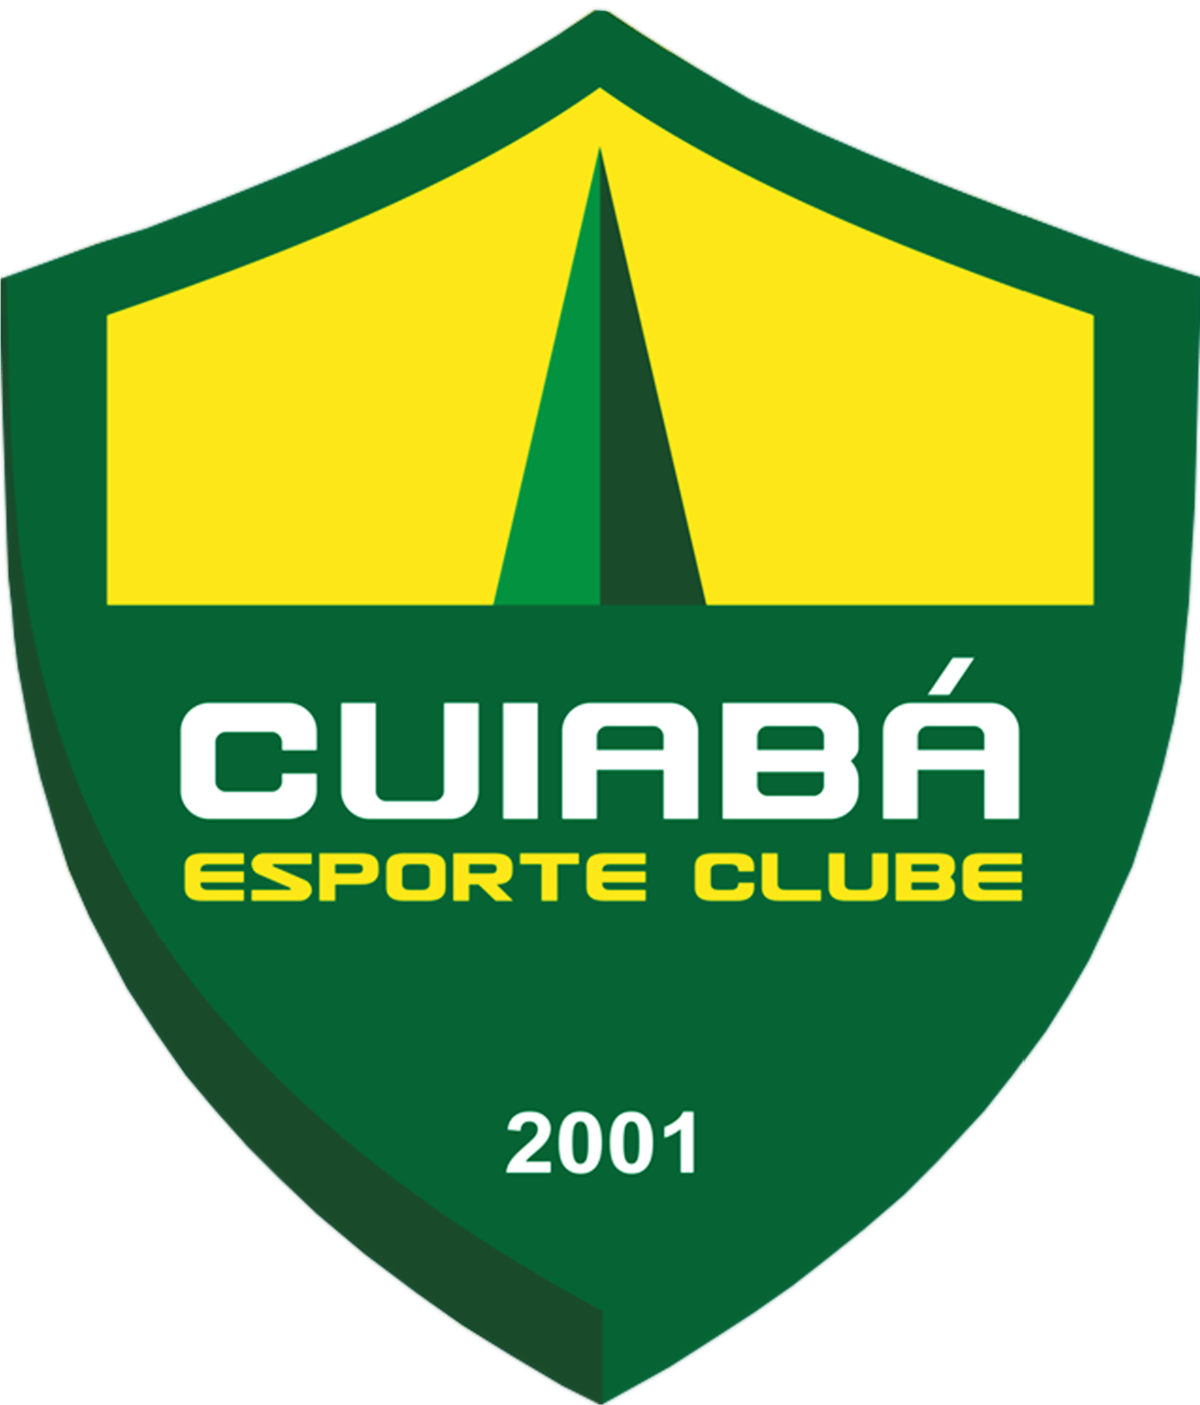 Cuiaba vs Fluminense: Will Fluminense move up to the top six?